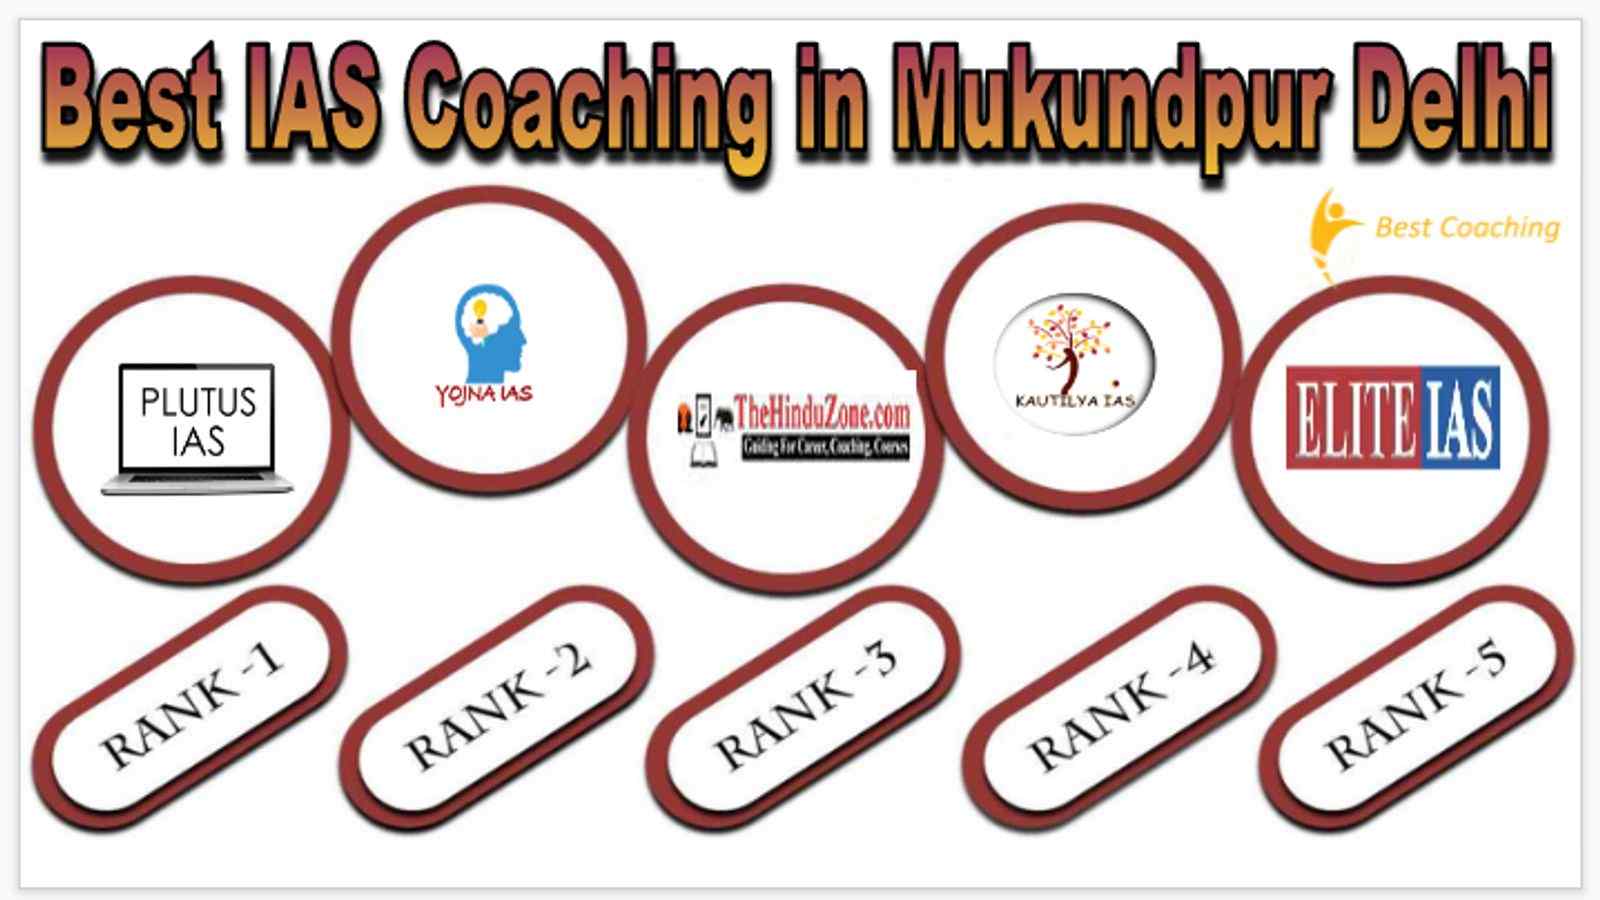 Best IAS Coaching in Mukundpur Delhi